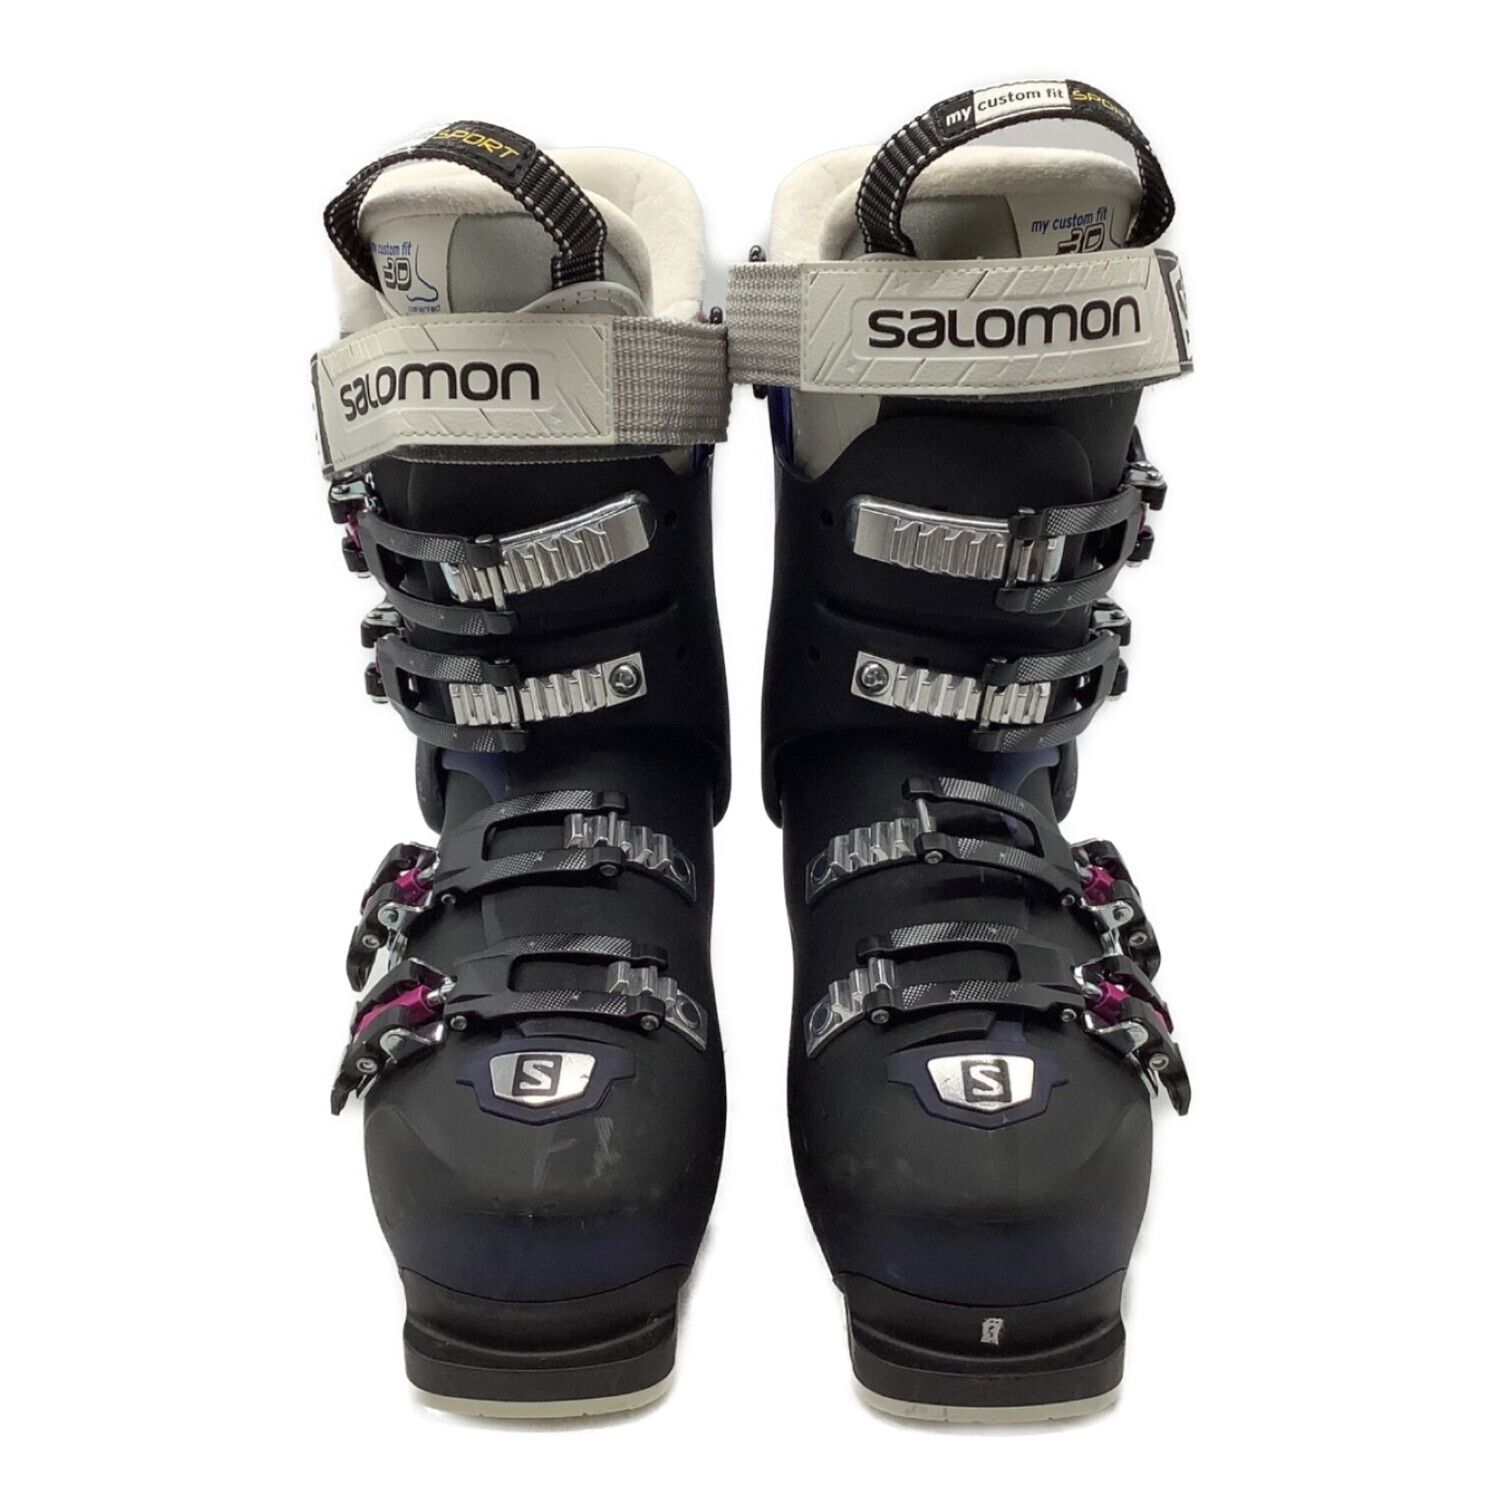 SALOMON (サロモン) スキーブーツ レディース SIZE 23cm ネイビー 276